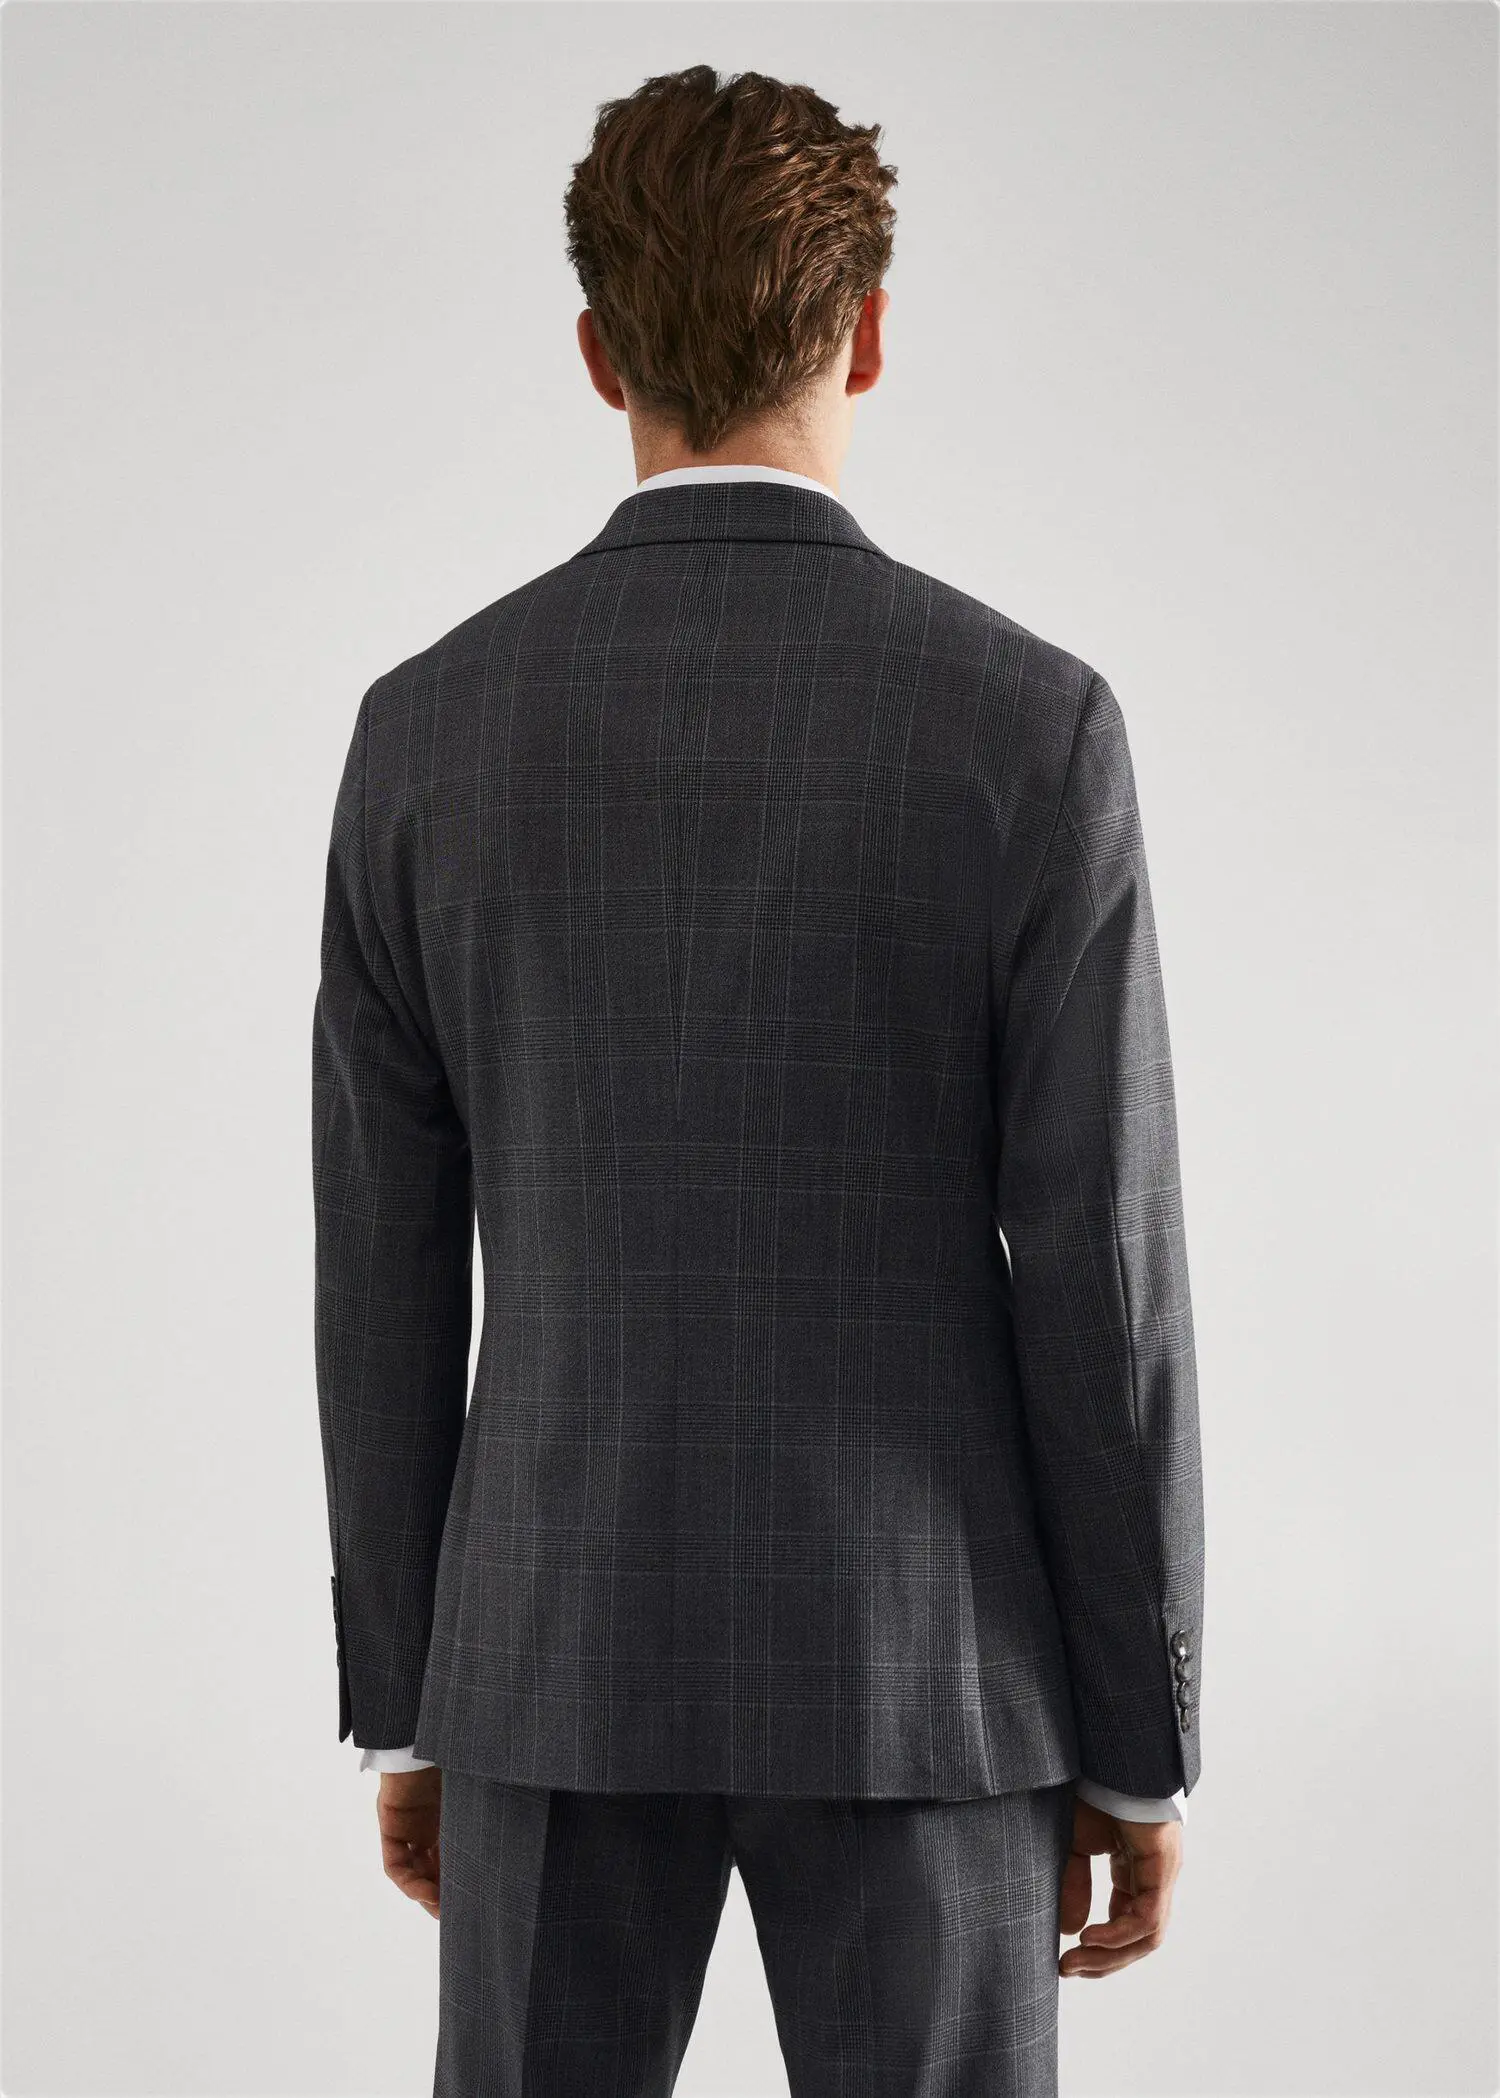 Mango Super slim-fit check suit jacket. 3